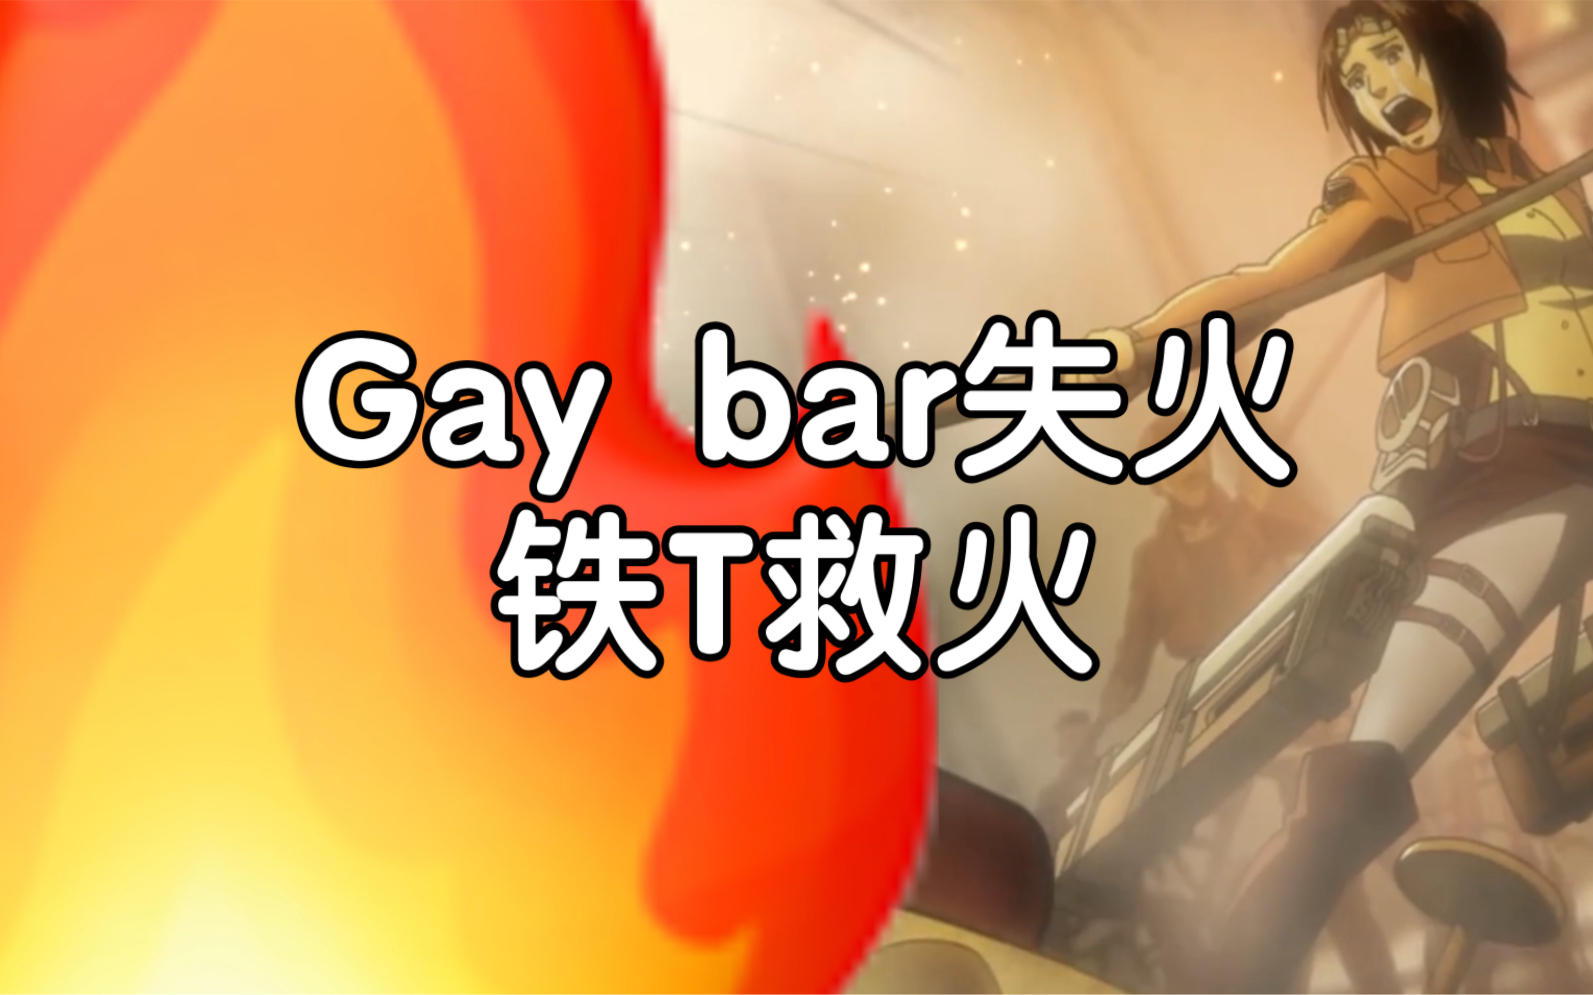 【进击的巨人】gay bar失火 铁t救火